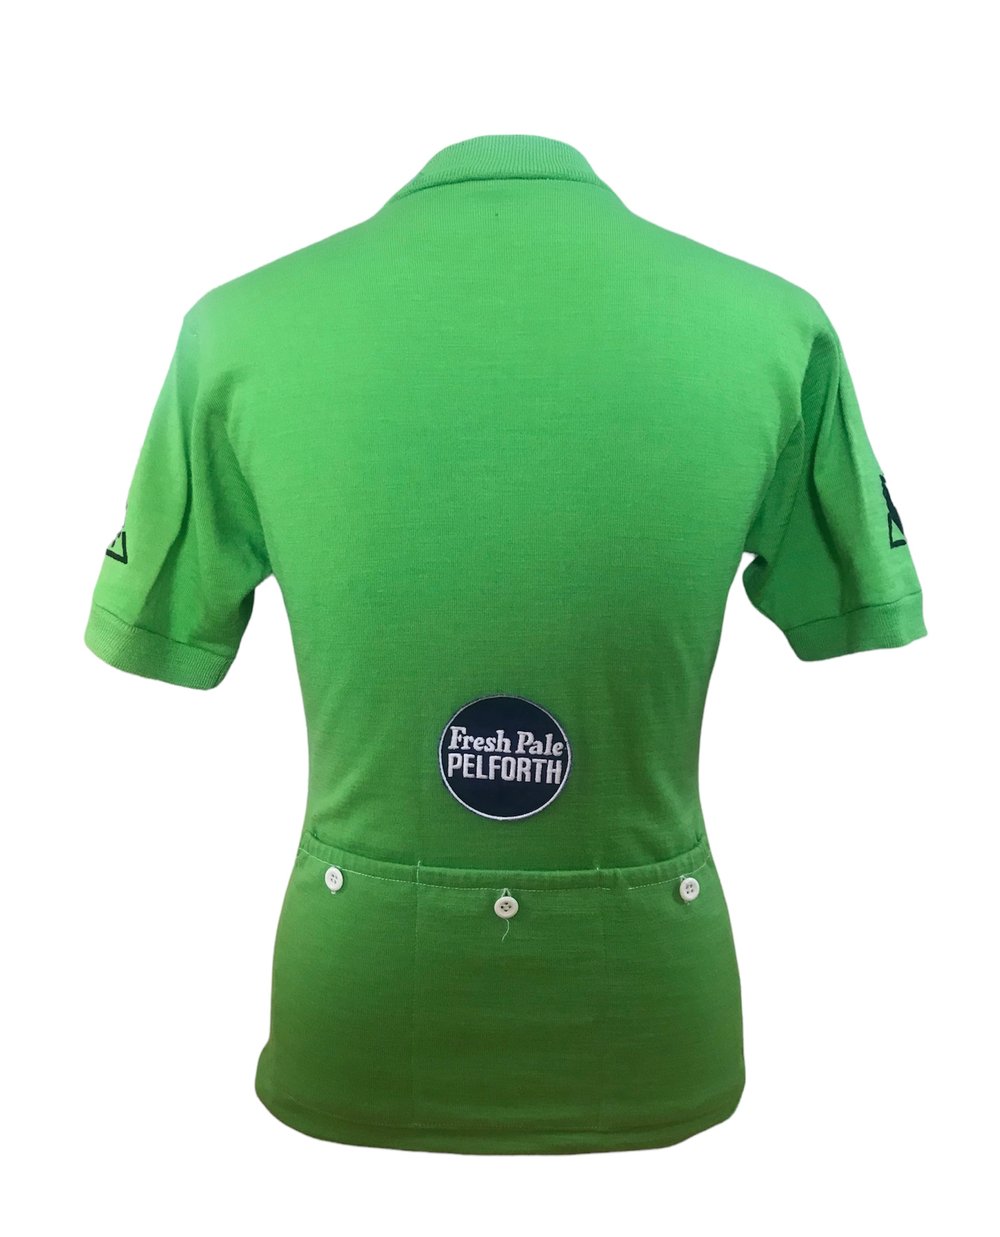 Eddy Merckx ðŸ‡§ðŸ‡ª 1972 Tour de France - green Points jersey  